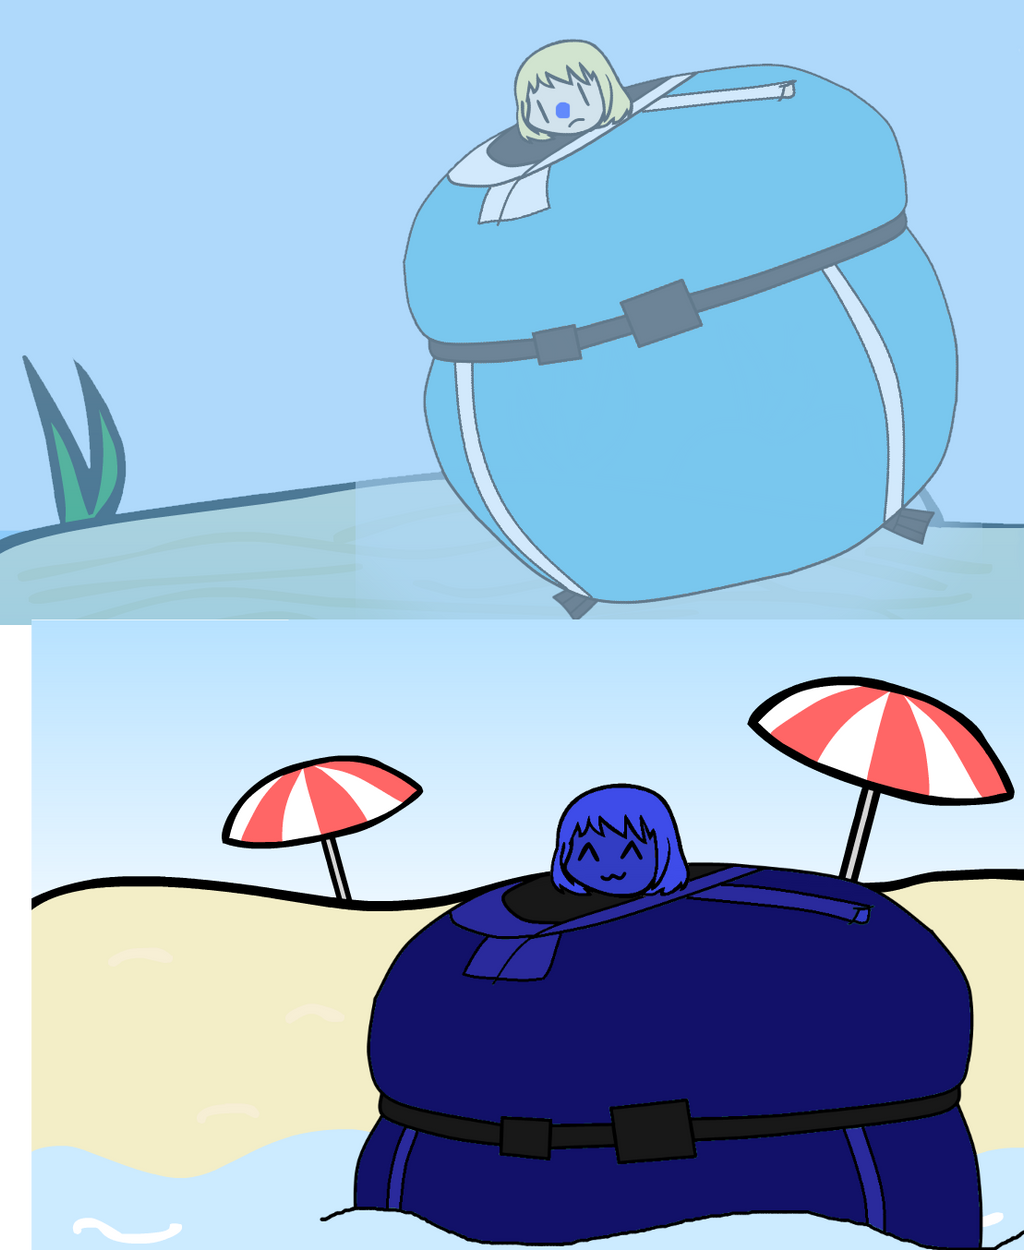 Underwater blueberry